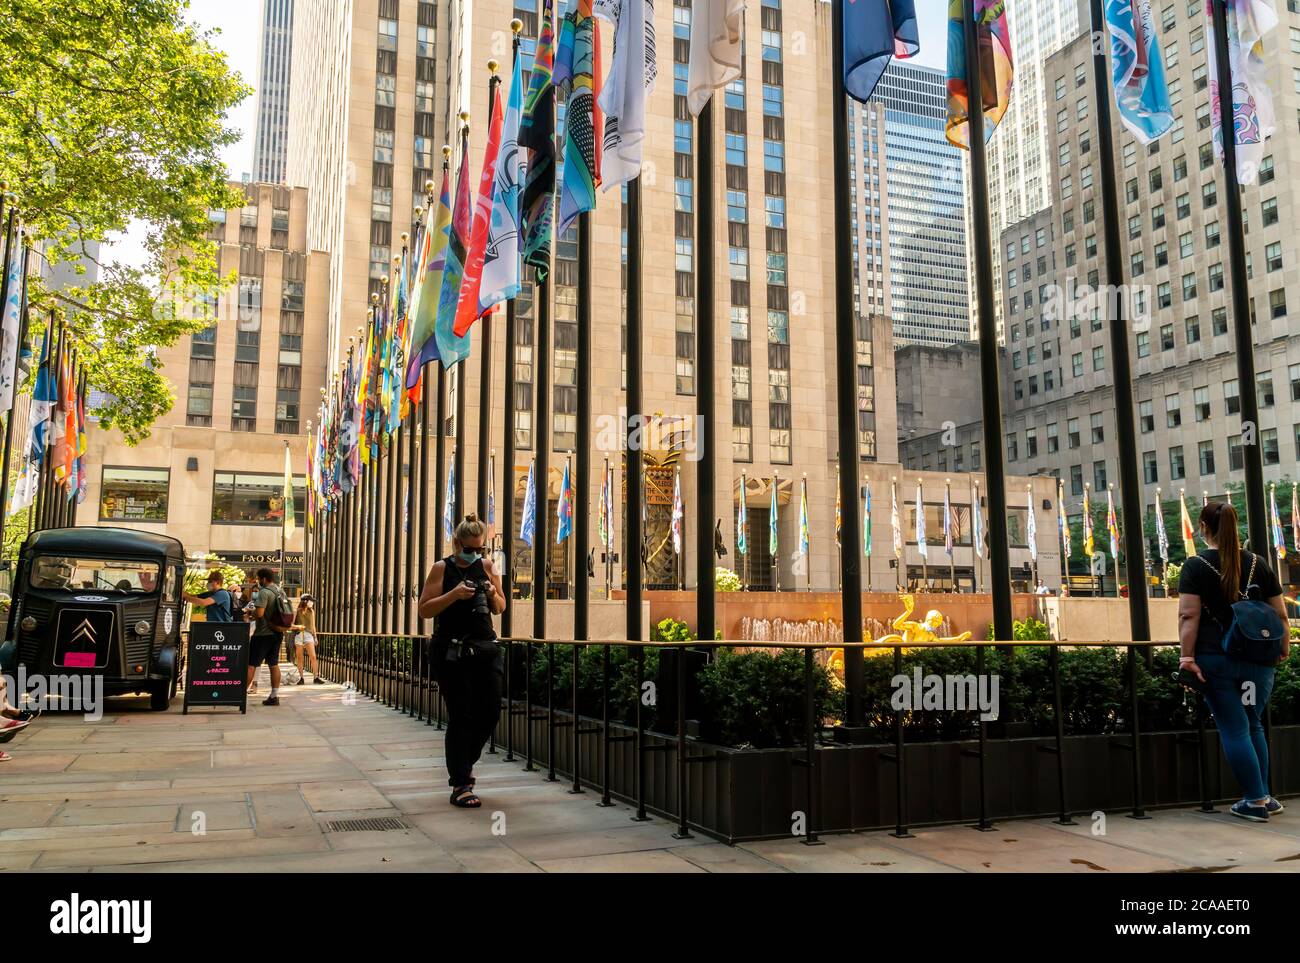 Les 193 drapeaux entourant la patinoire du Rockefeller Center à New York présentent le travail de personnes qui ont conçu des drapeaux pour montrer leur amour de New York, vu le jour de l'ouverture, le 1er août 2020. Le Rockefeller Center a lancé un appel pour des dessins de drapeaux, de personnes de tous les niveaux artistiques, qui représentent leur amour de New York pour l'exposition temporaire qui se tiendra jusqu'au 16 août. Plusieurs artistes notables ont également participé. (© Richard B. Levine) Banque D'Images